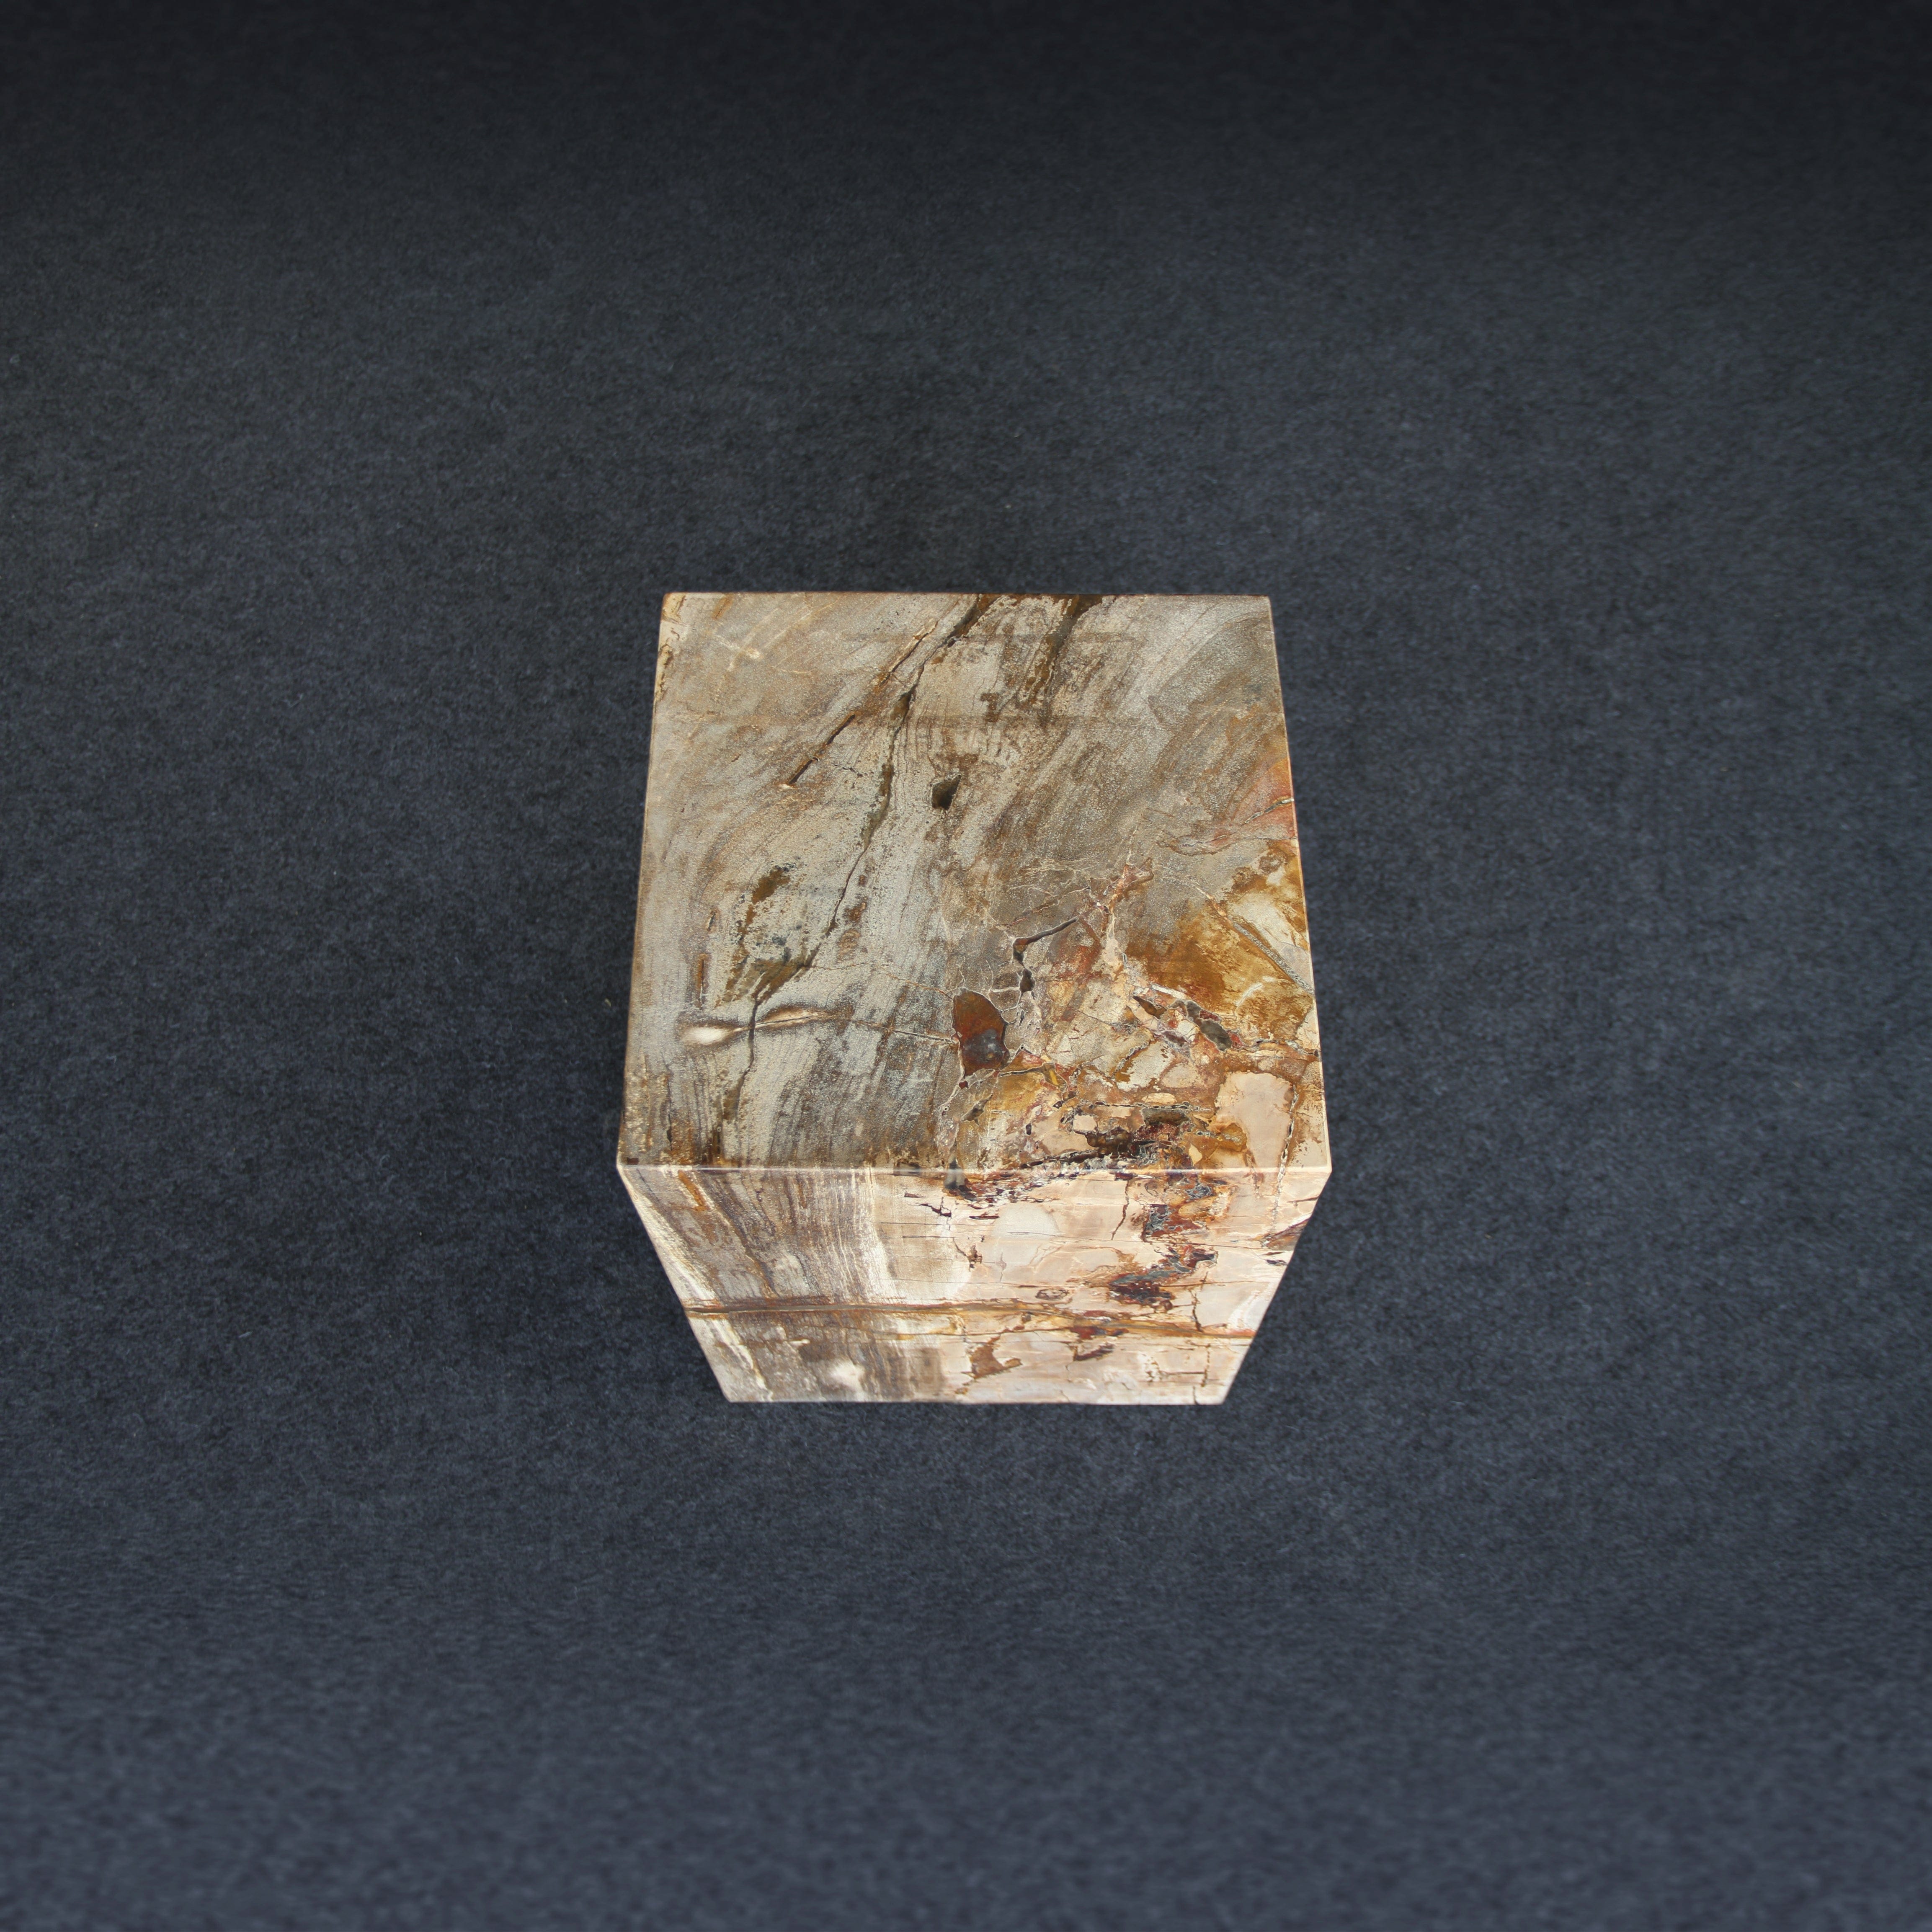 Kalifano Petrified Wood Petrified Wood Square Stump / Stool 16" / 201 lbs PWSS6200.003